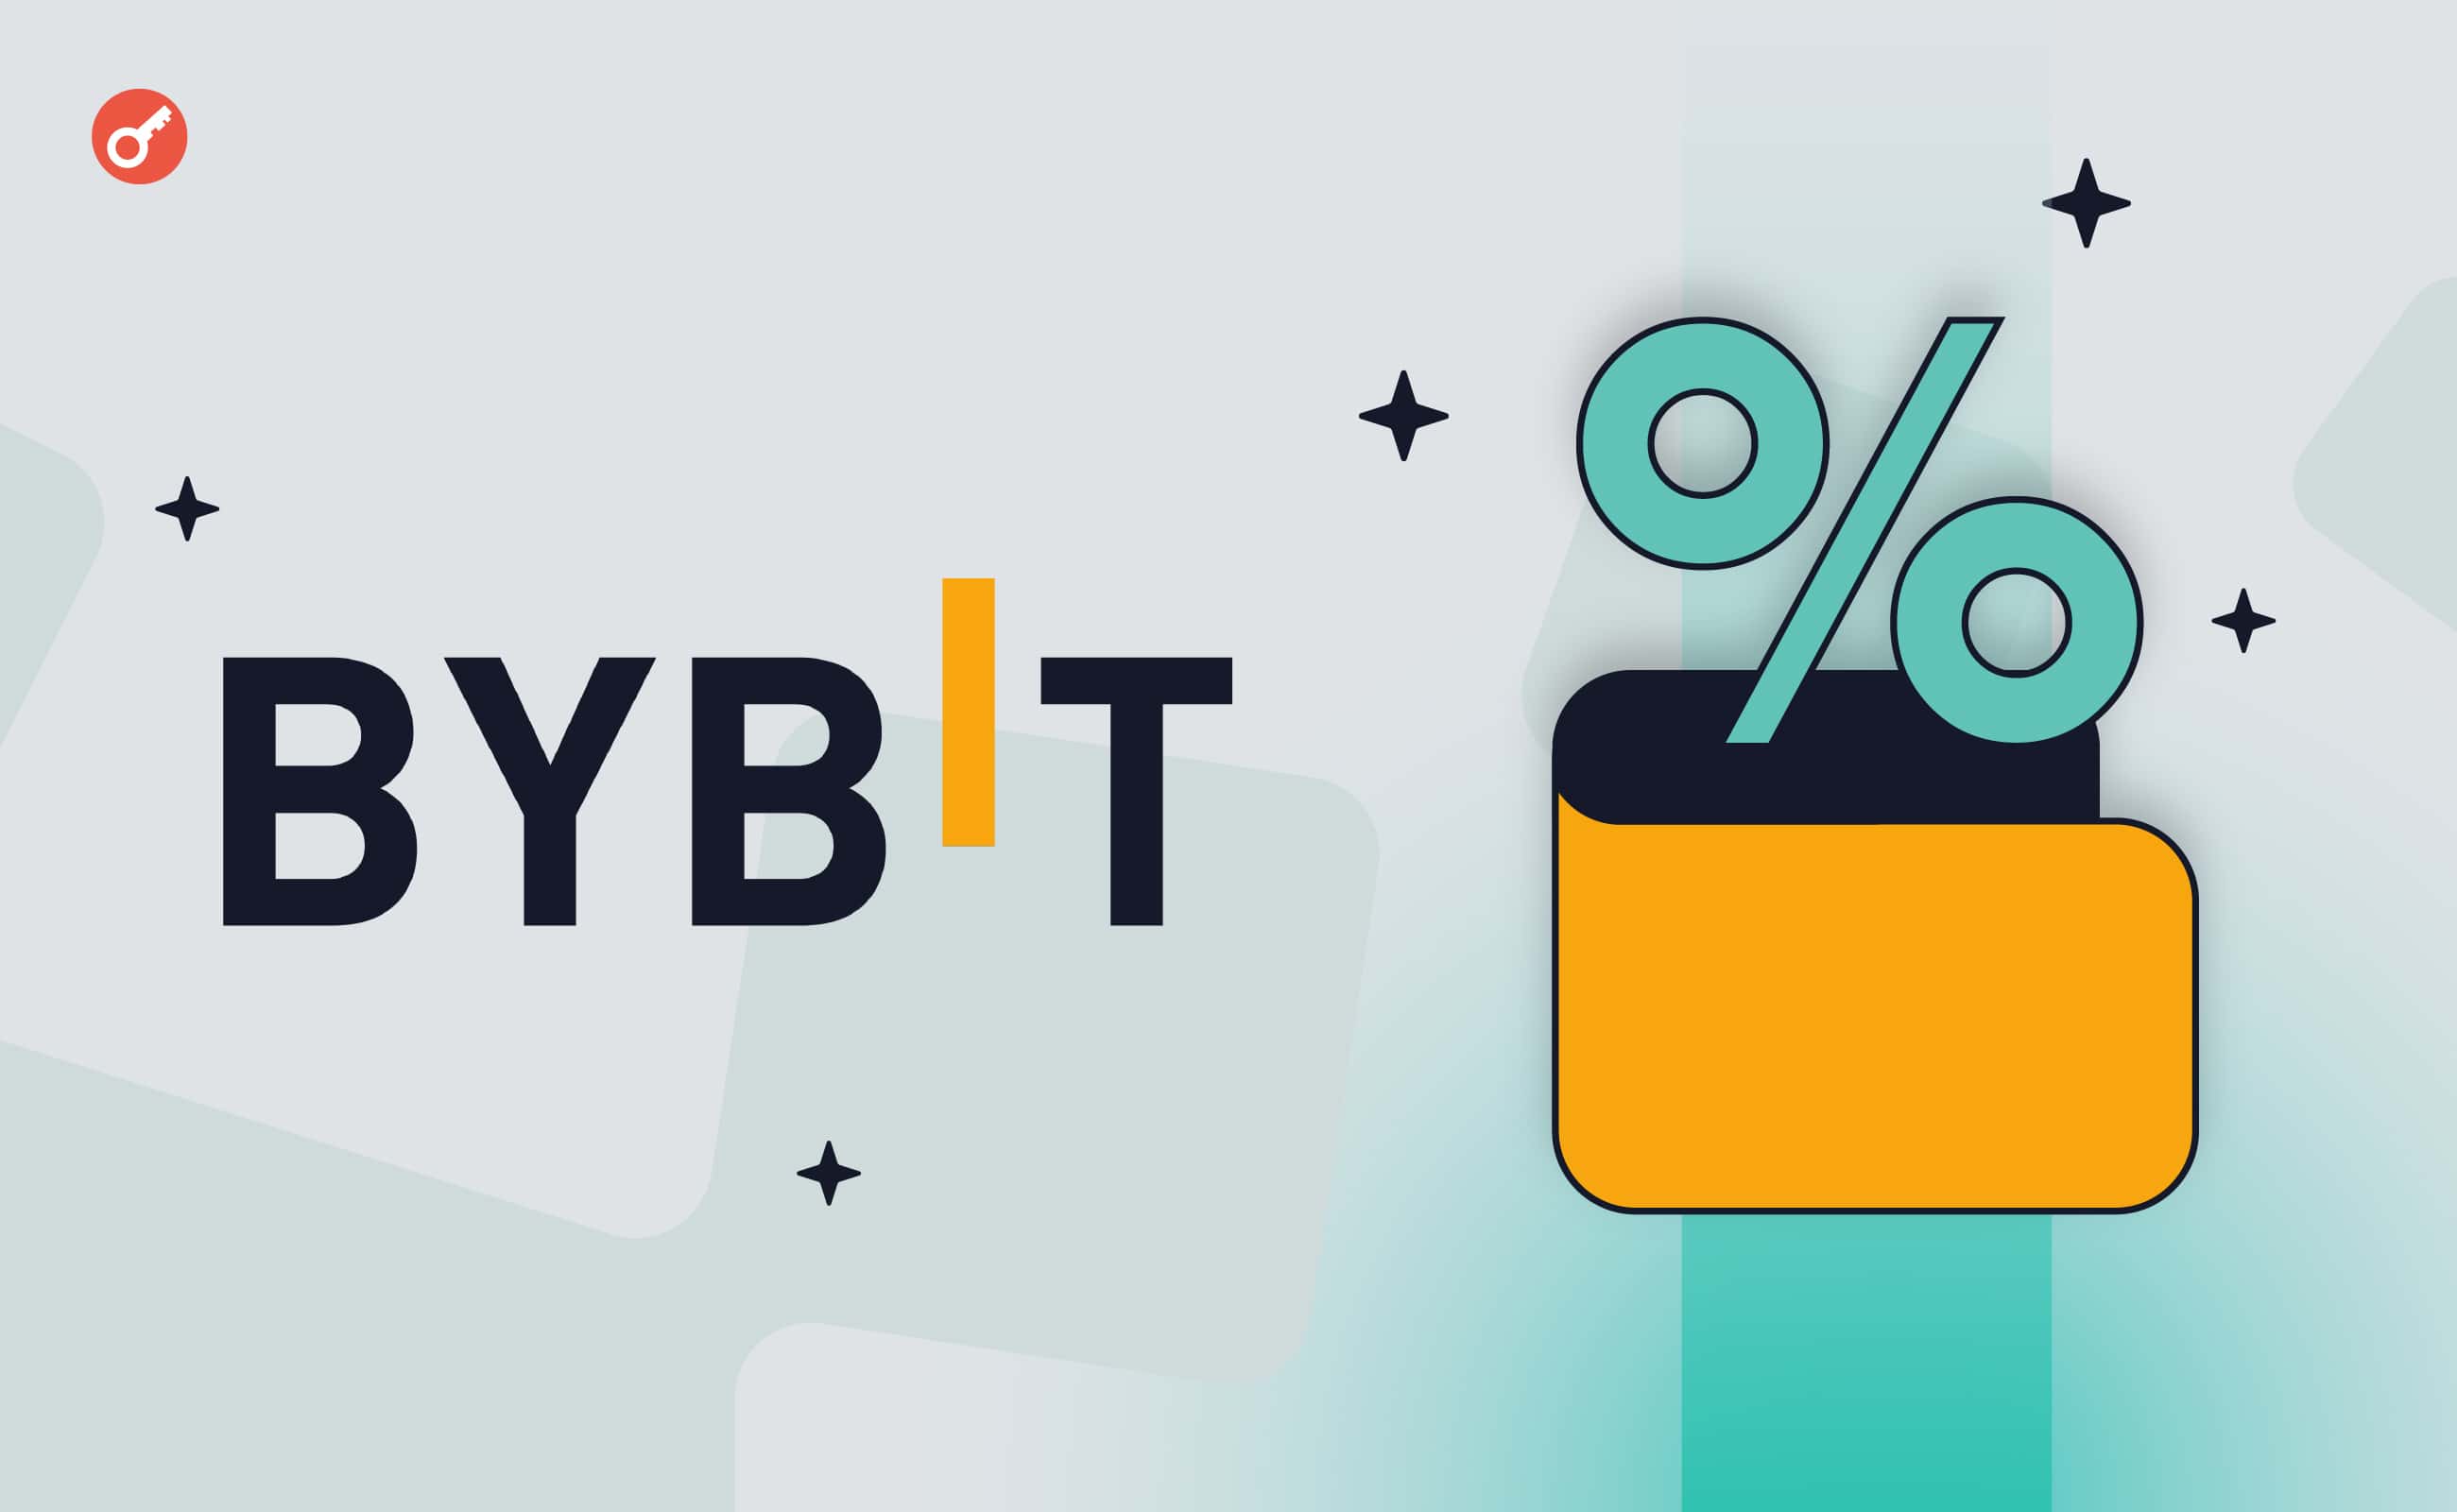 Bybit об’єднала Lending із платформою гнучких накопичень. Головний колаж новини.